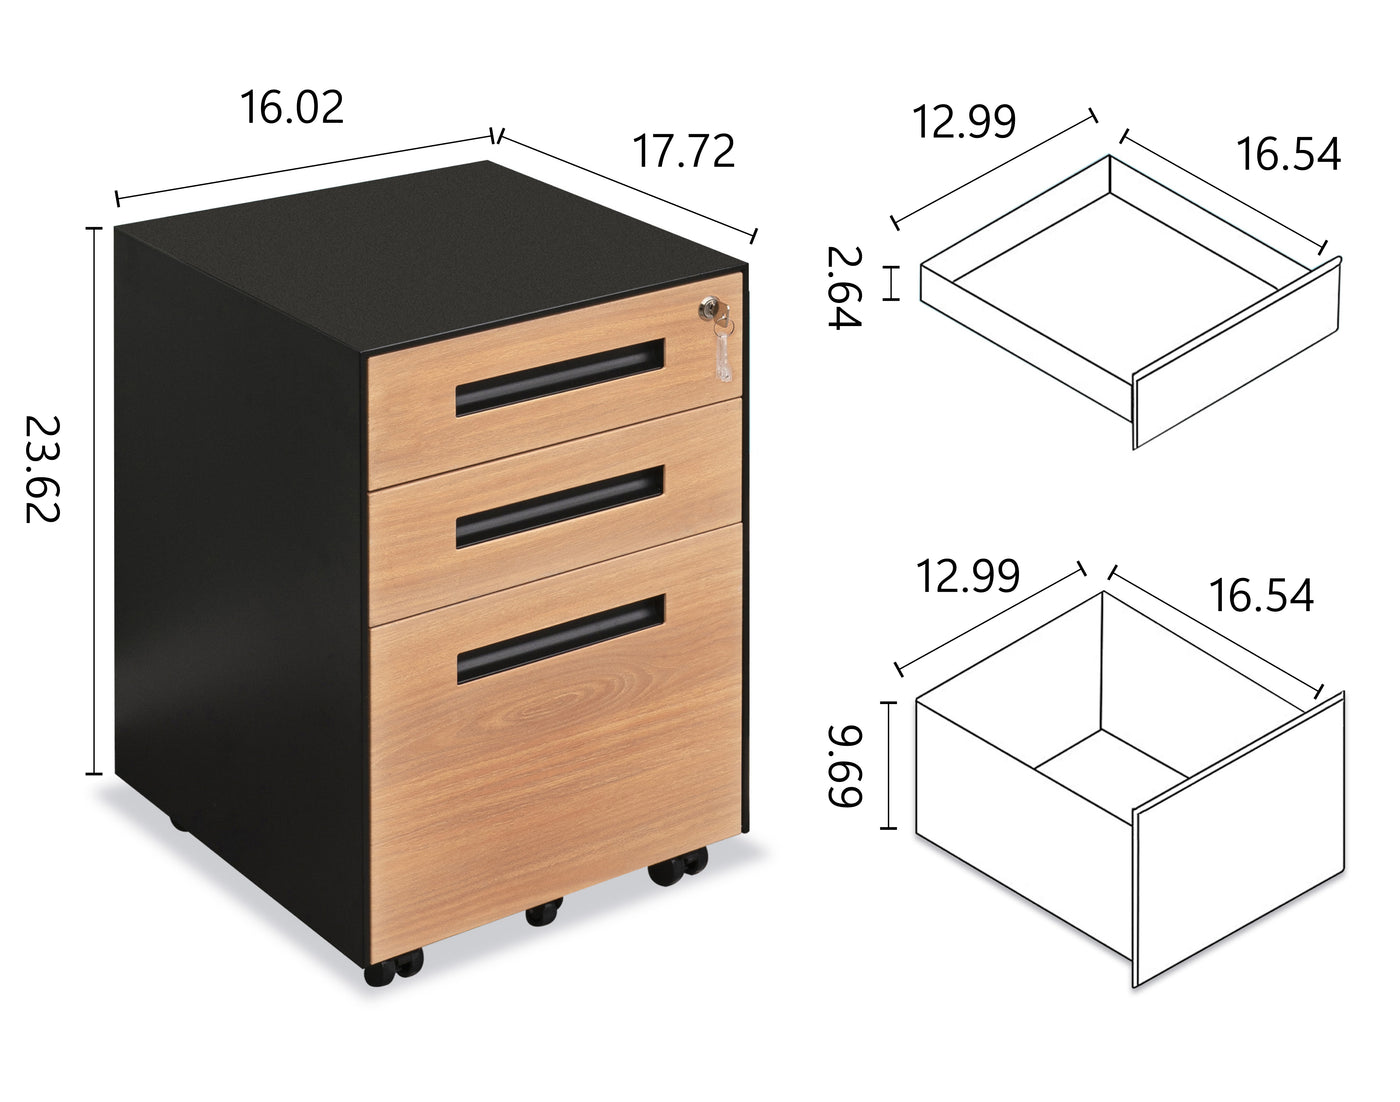 Logicfox 3 Drawers Metal File Cabinet